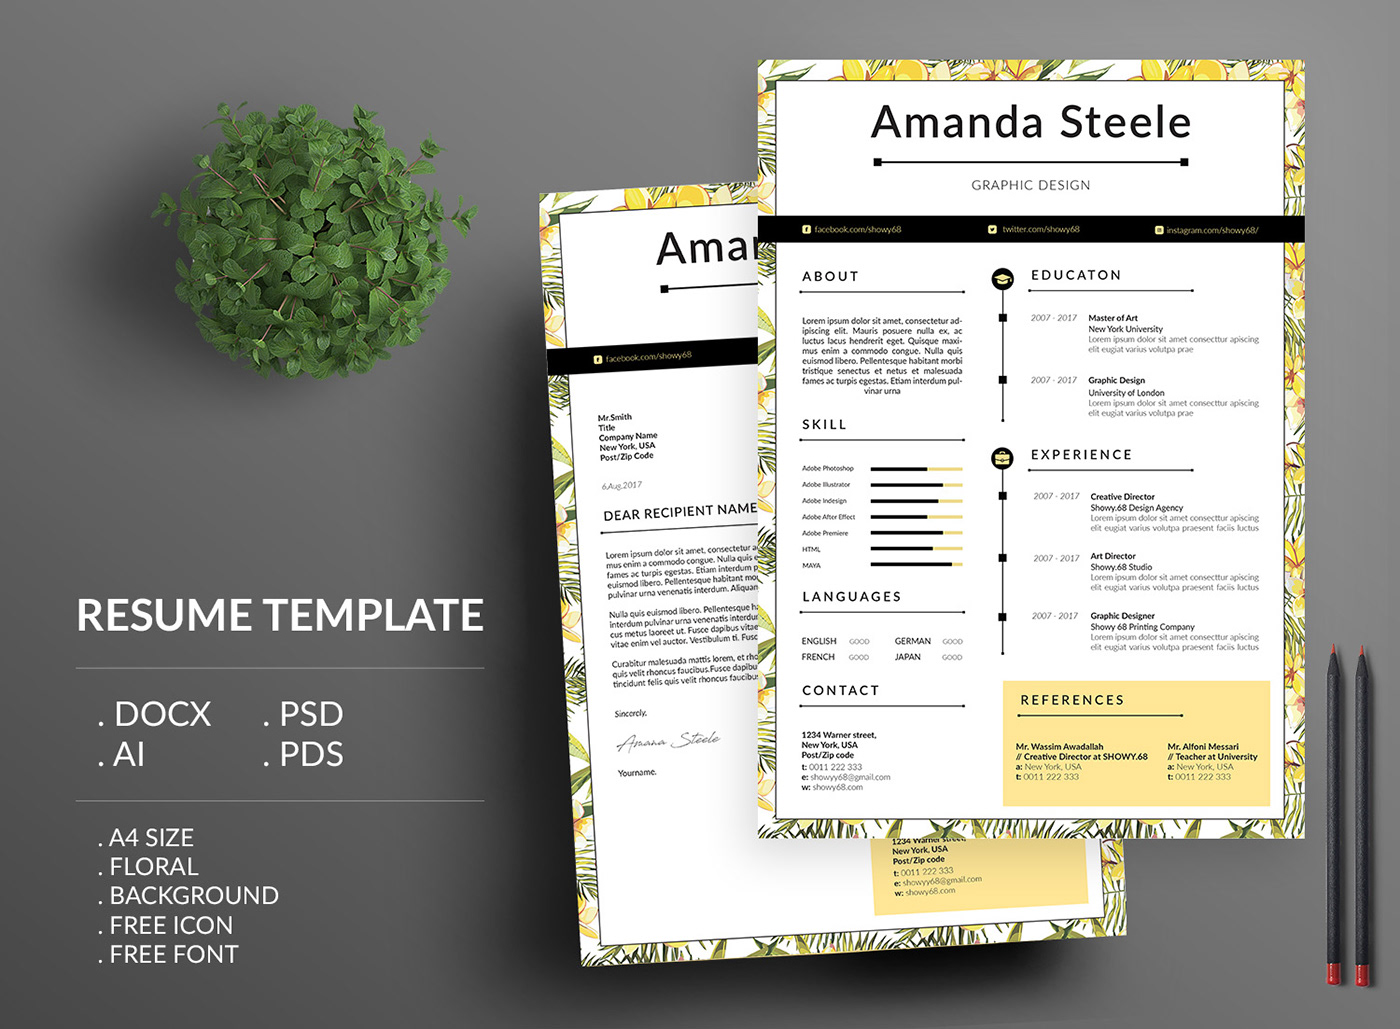 Resume CV CV template resume template clean resume simple resume minimalist floral template word template branding 